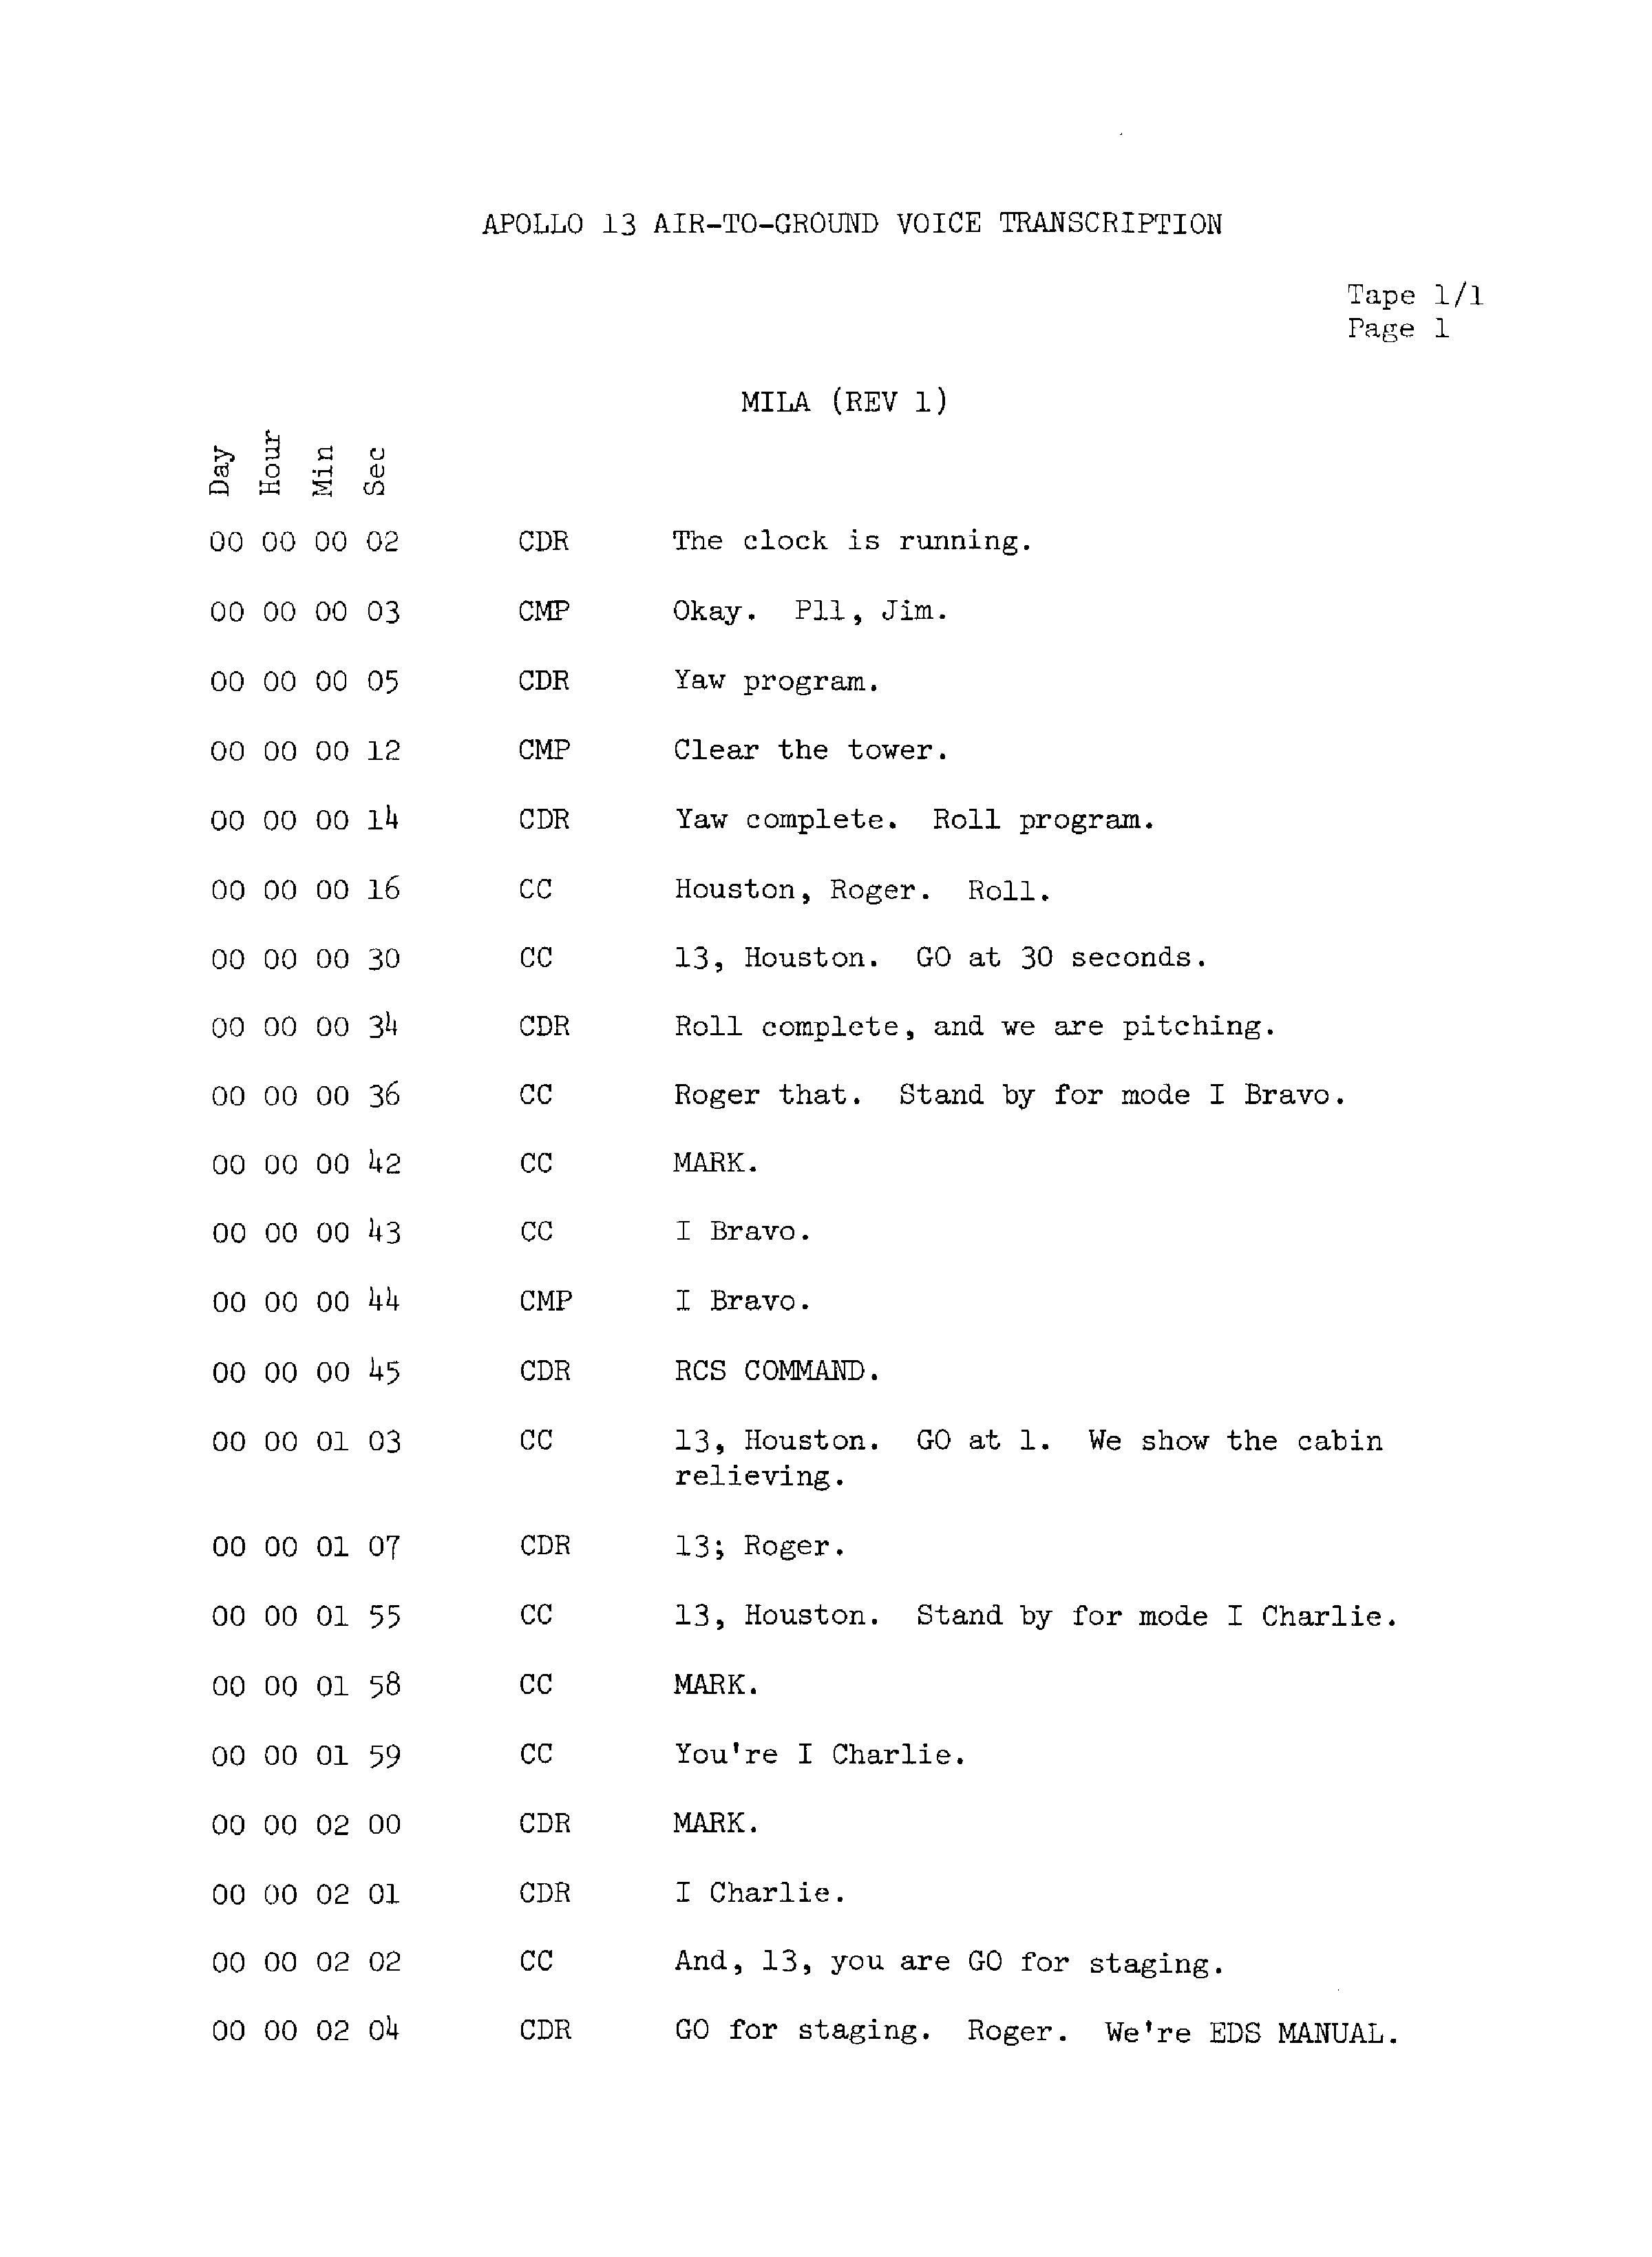 Page 8 of Apollo 13’s original transcript